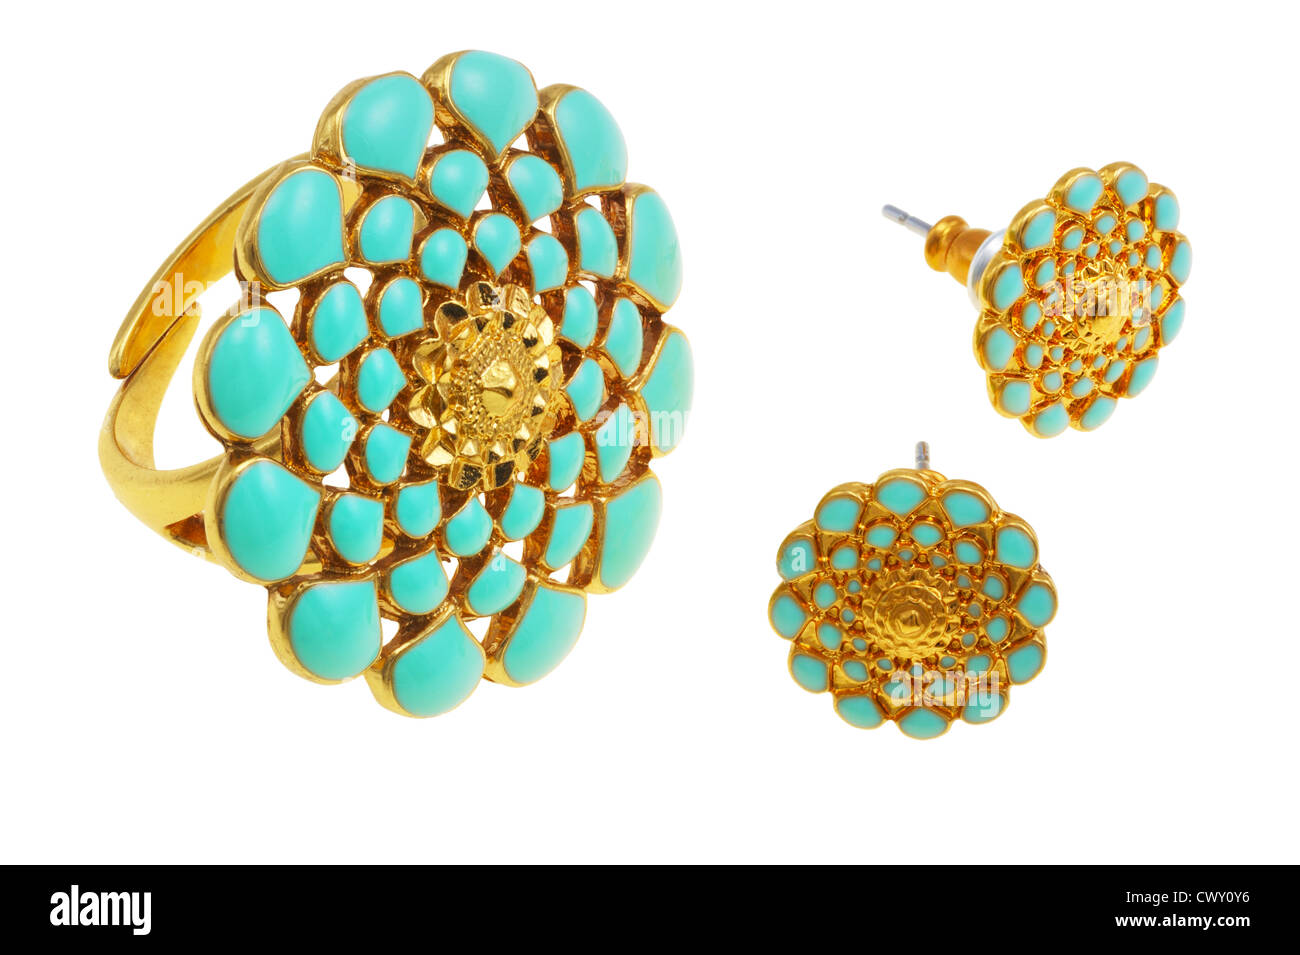 Bijoux, bague jaune et d'ornement floral bleu Banque D'Images